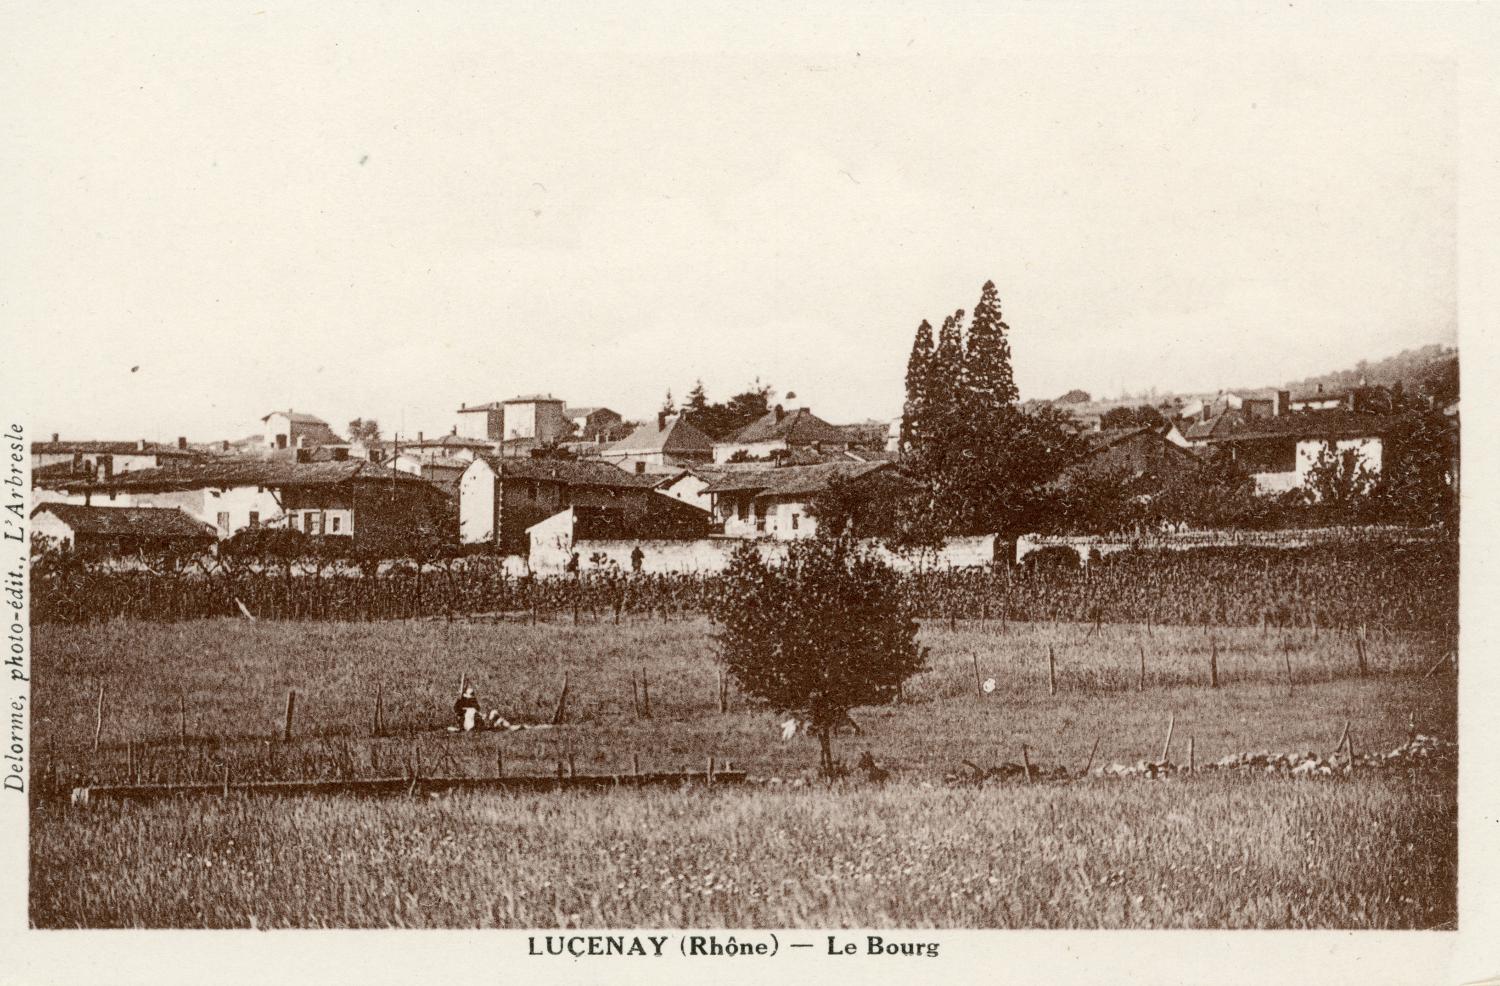 Lucenay (Rhône). - Le Bourg